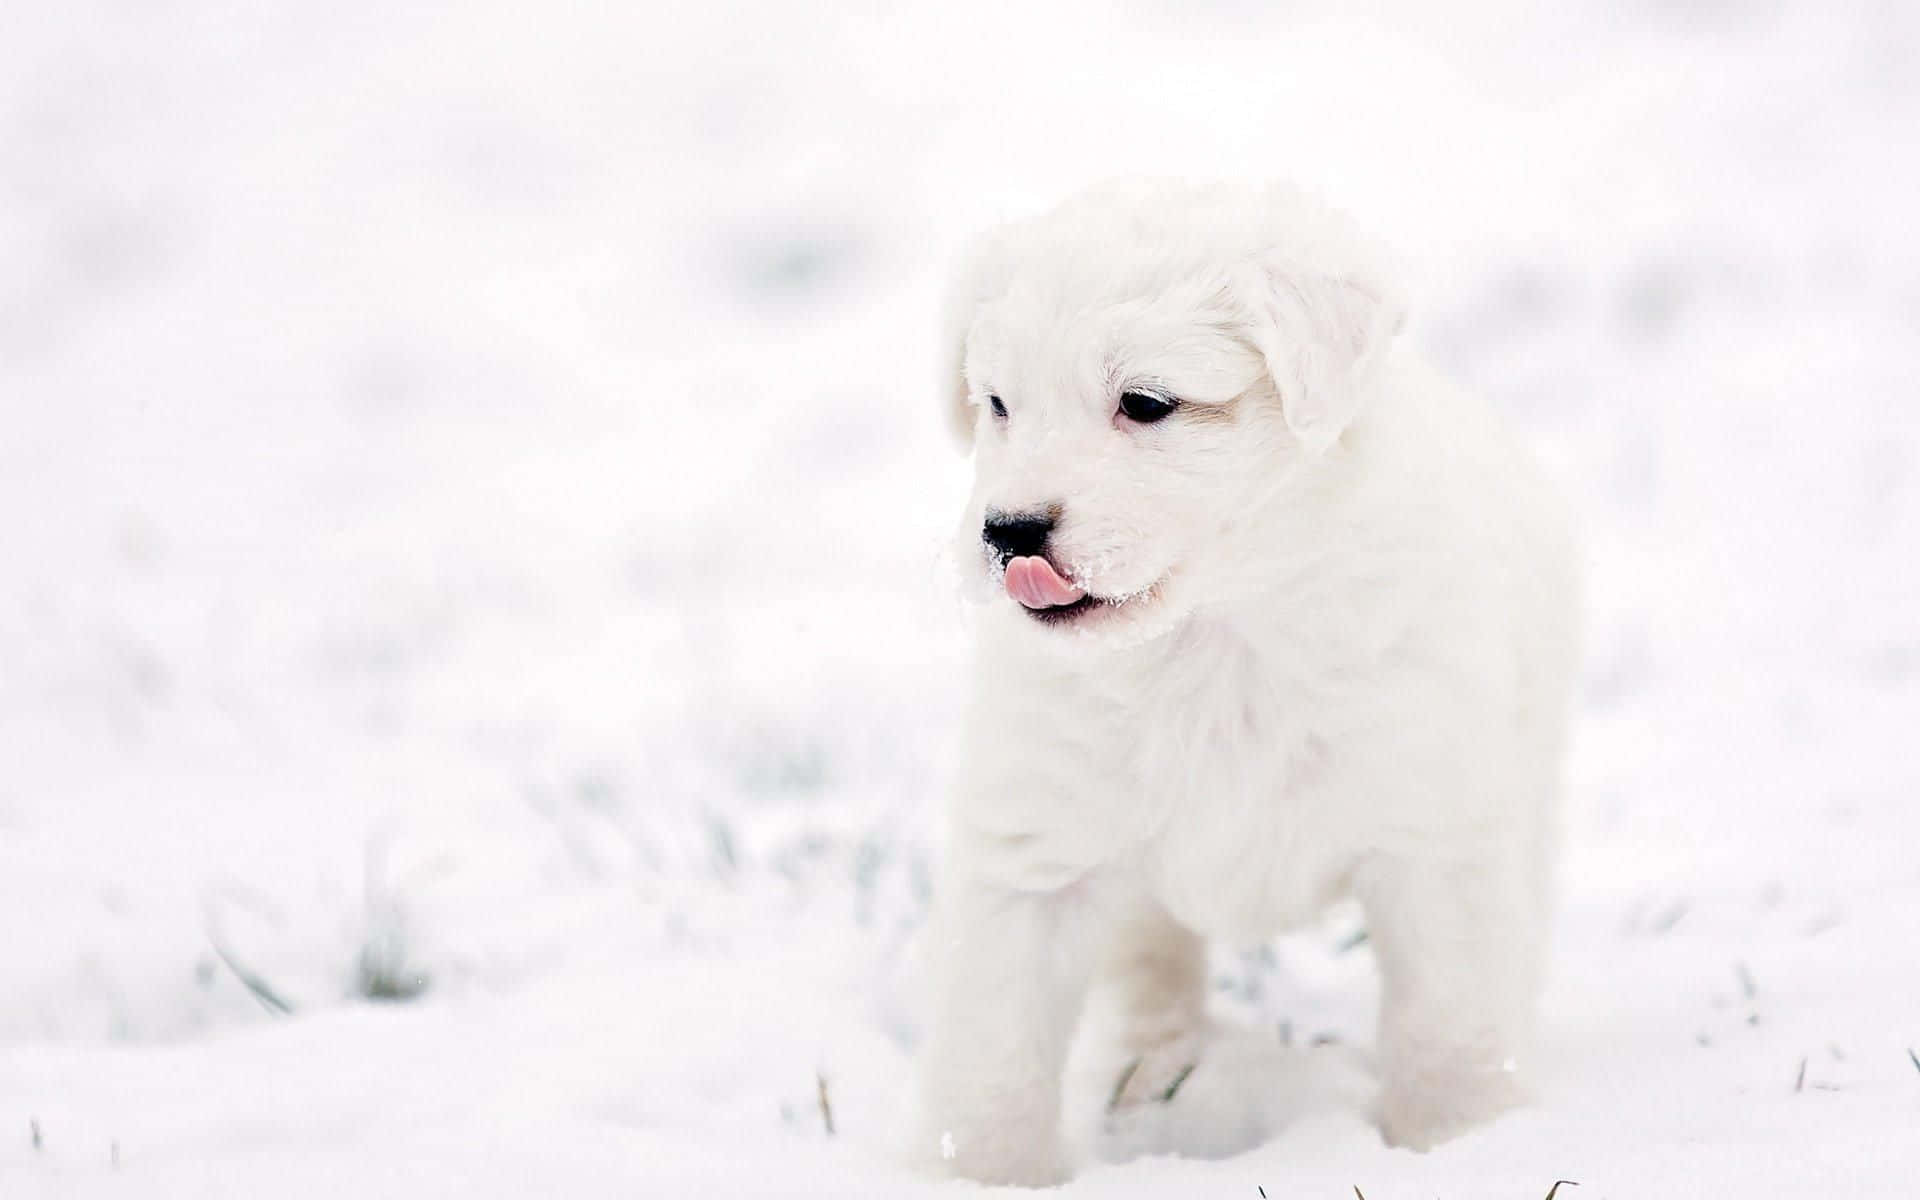 En hund holder pause i det snefyldte landskab. Wallpaper